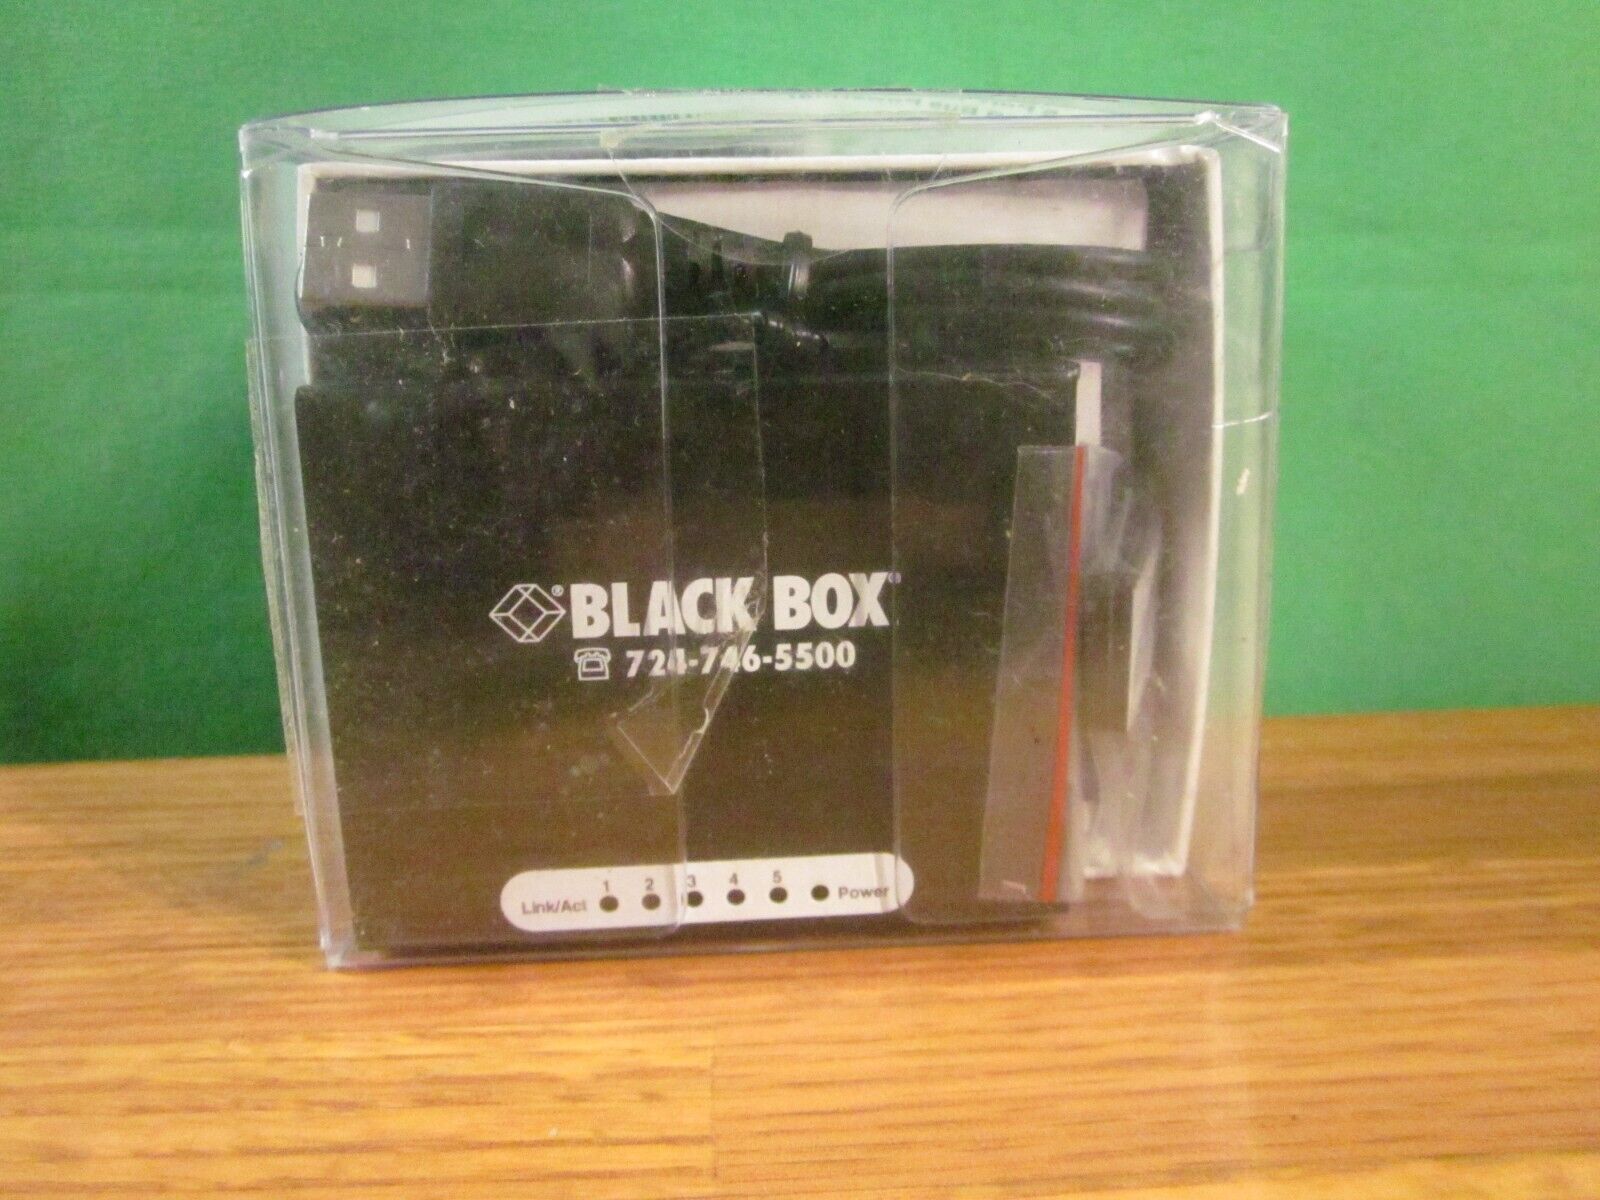 Black Box (LBS005A) 5-Ports External Switch